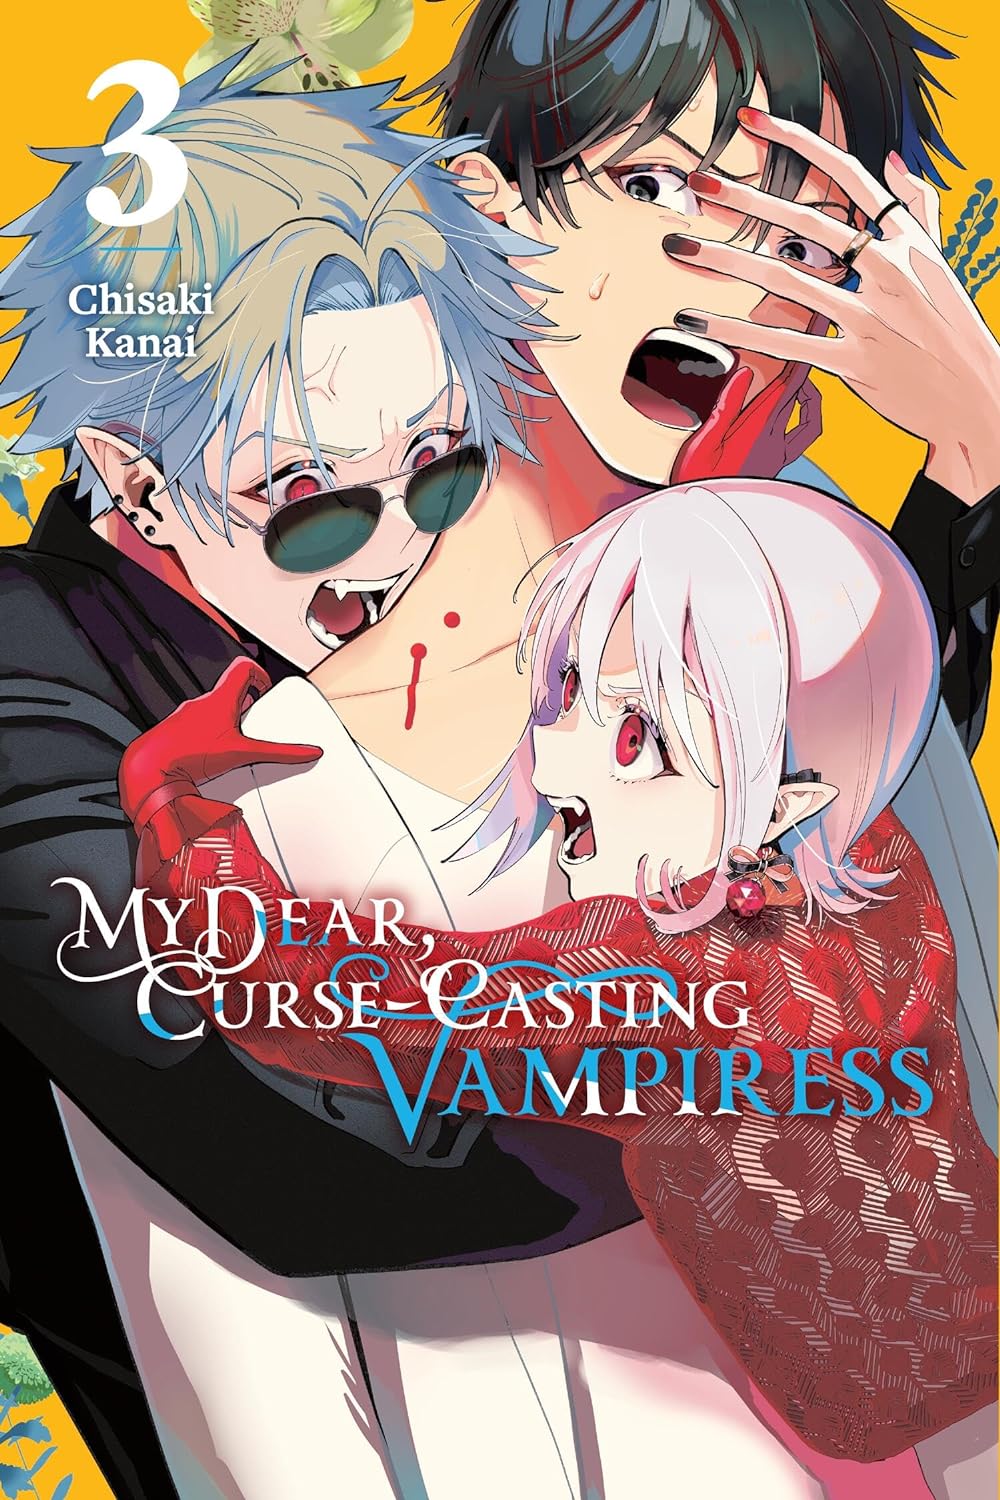 My Dear, Curse-Casting Vampiress Vol. 03